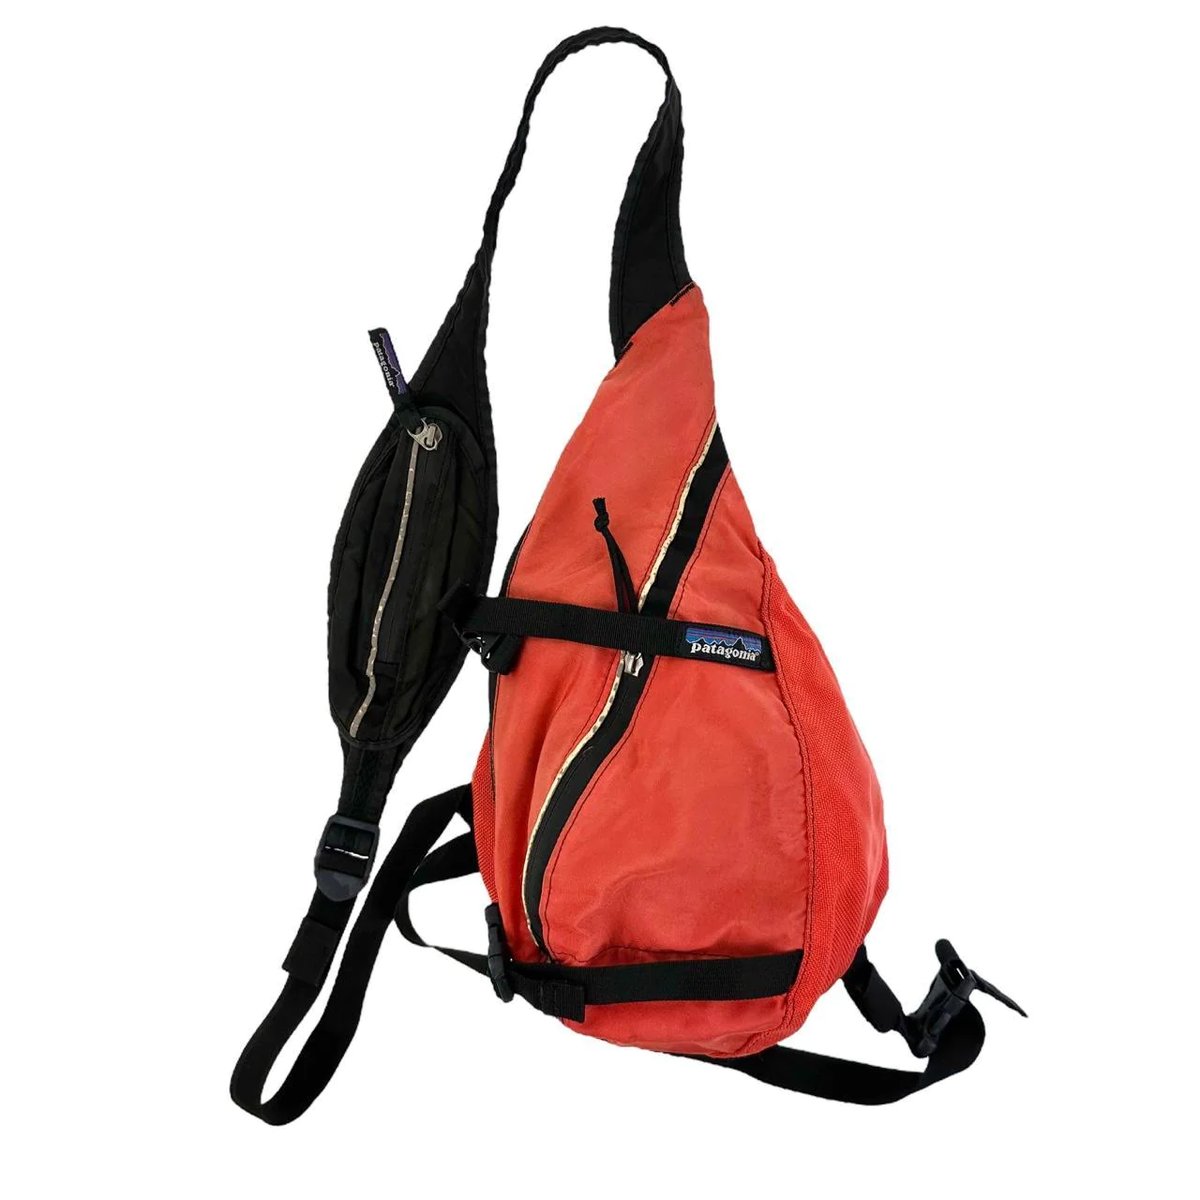 00s coleman】 technical design sling bag-